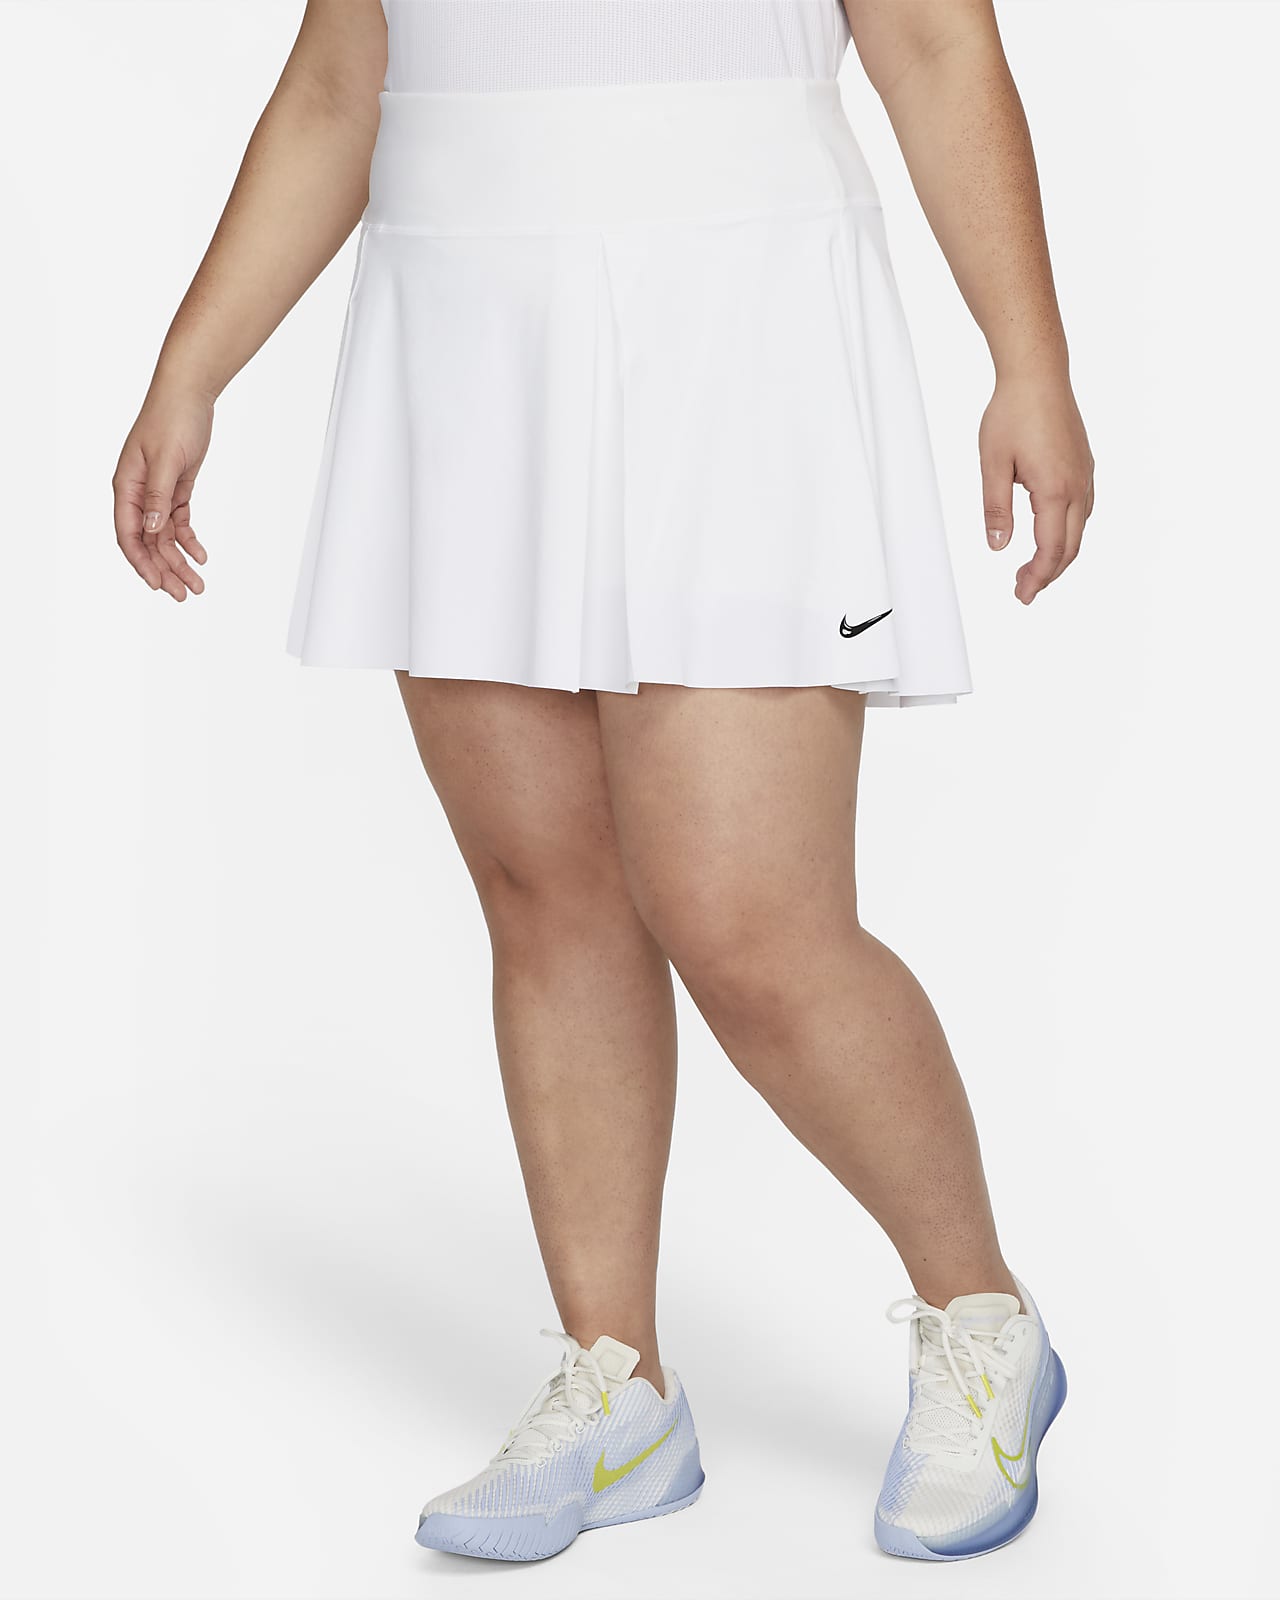 Mujer Blanco Tenis Faldas y vestidos. Nike US